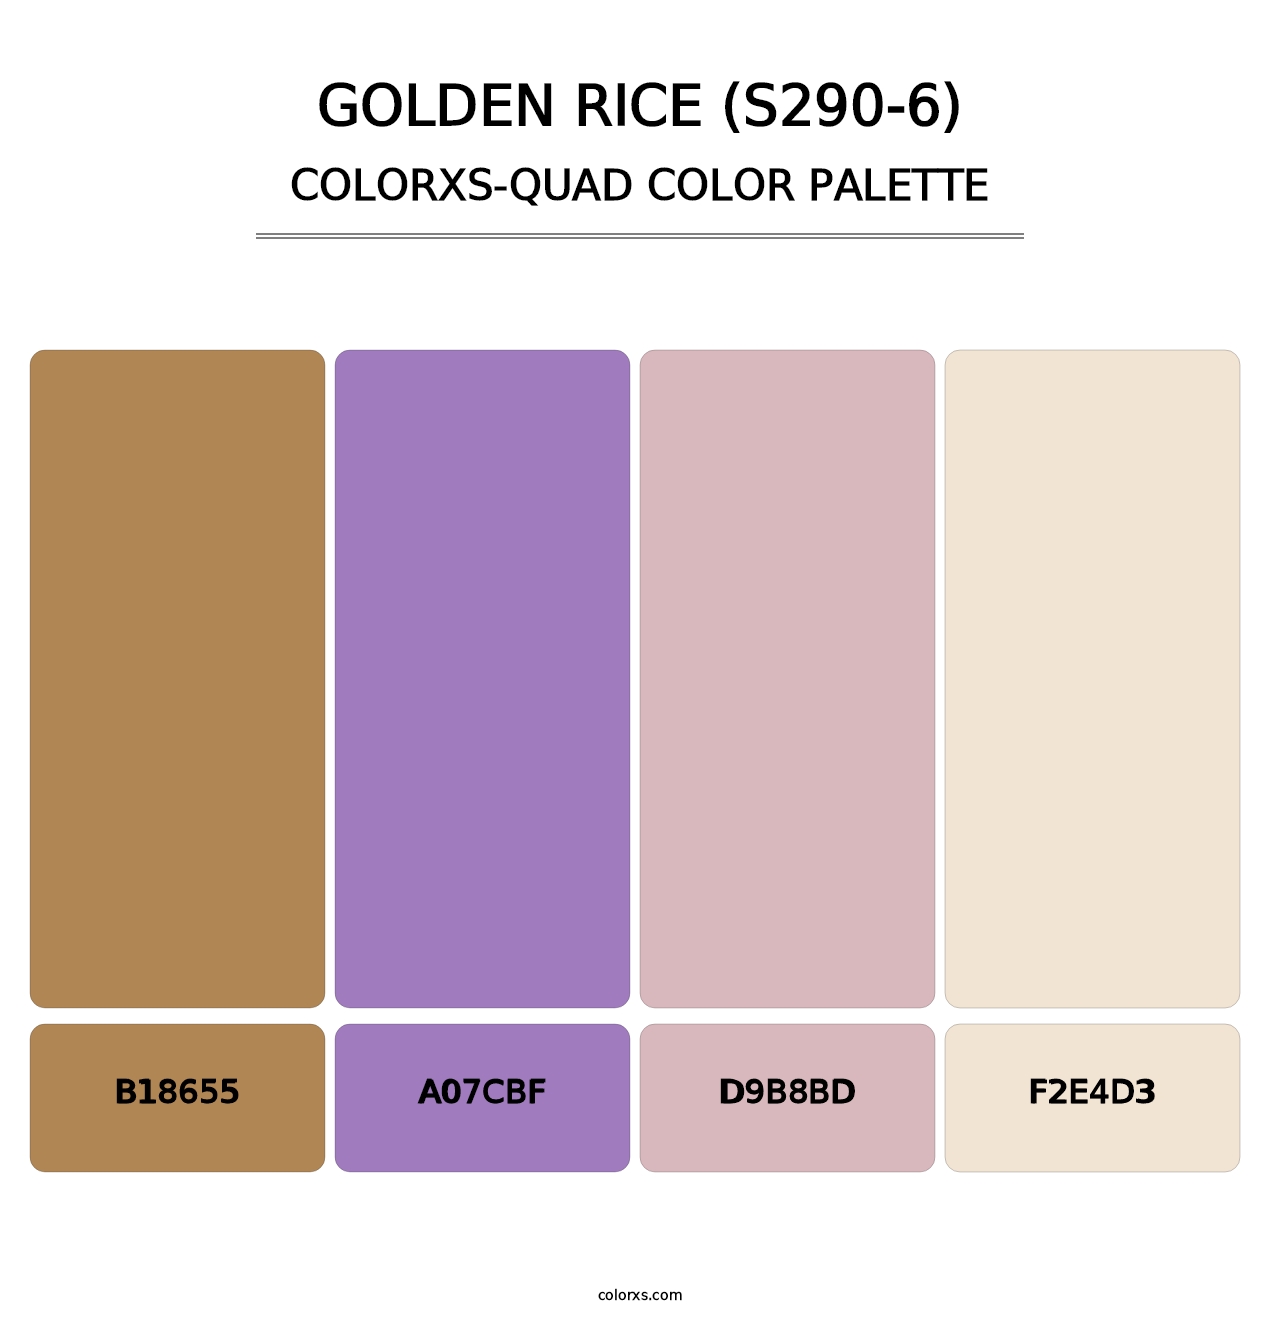 Golden Rice (S290-6) - Colorxs Quad Palette